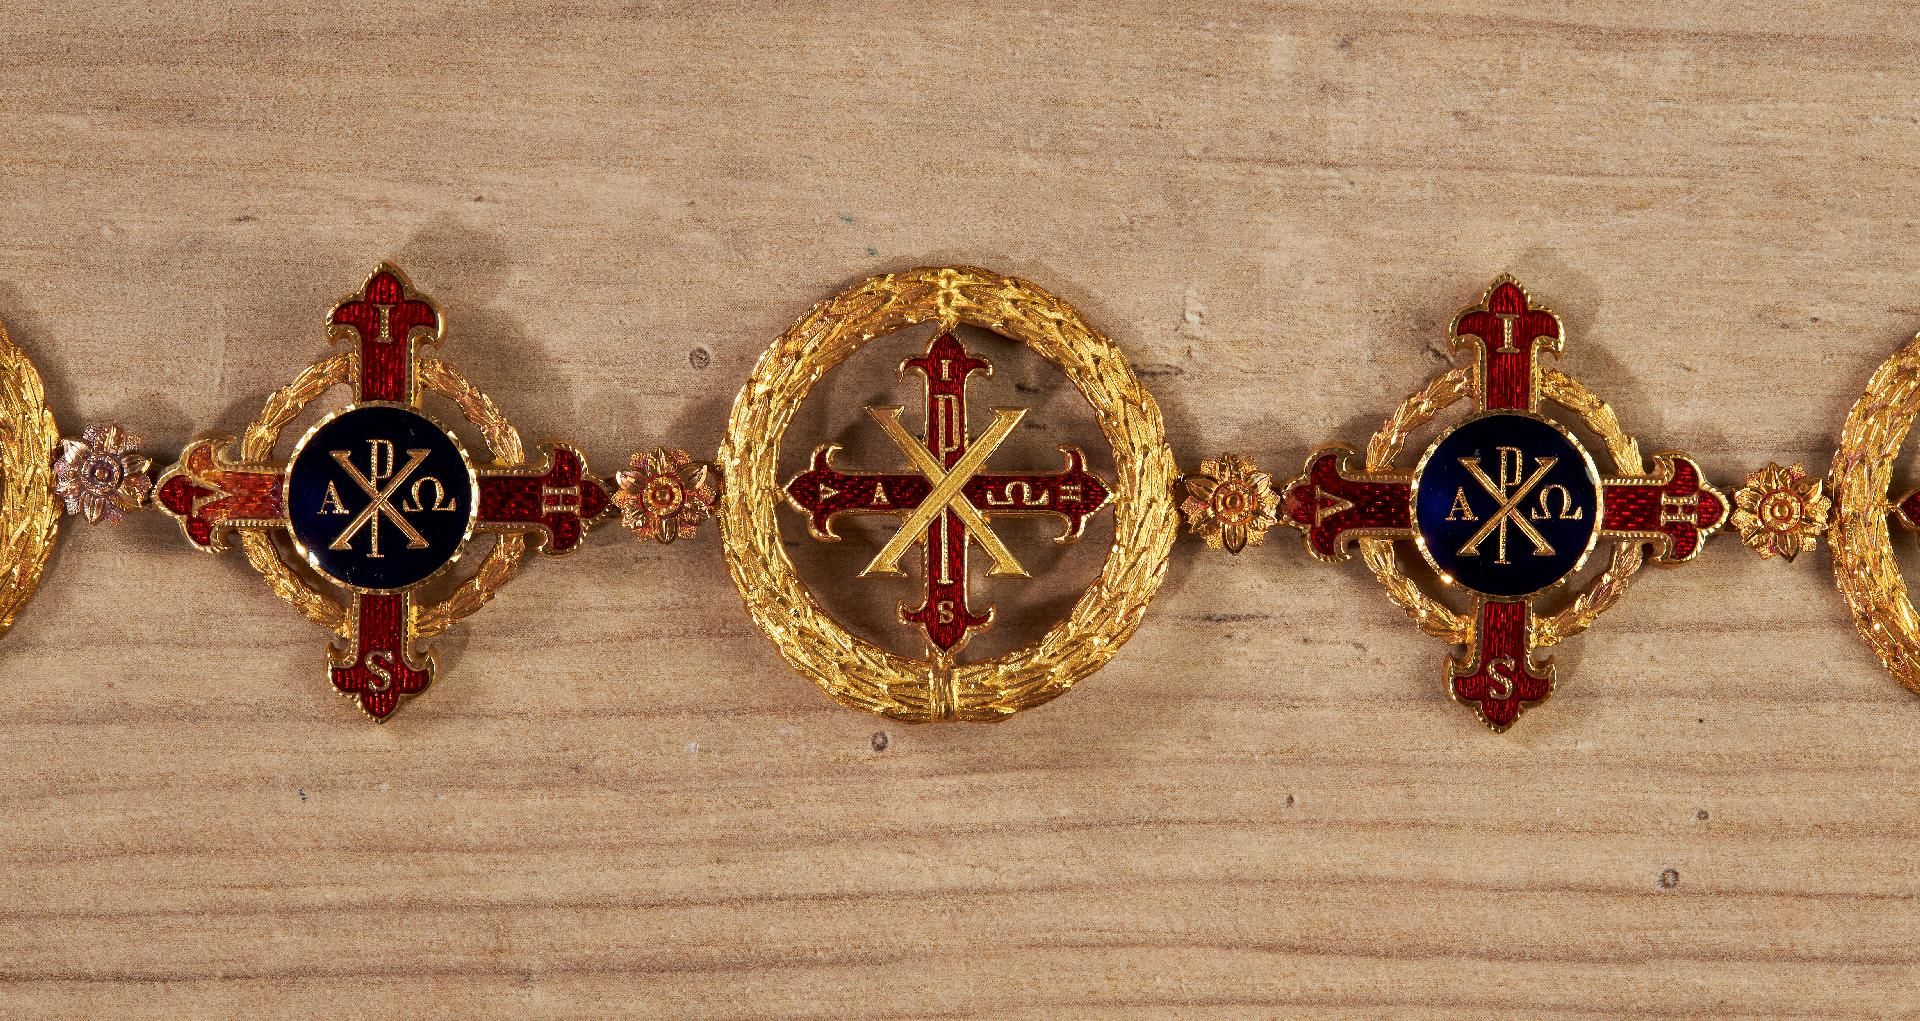 Königreich beider Sizilien : Konstantinischer Militärorden vom Hl. Georg - Image 2 of 3